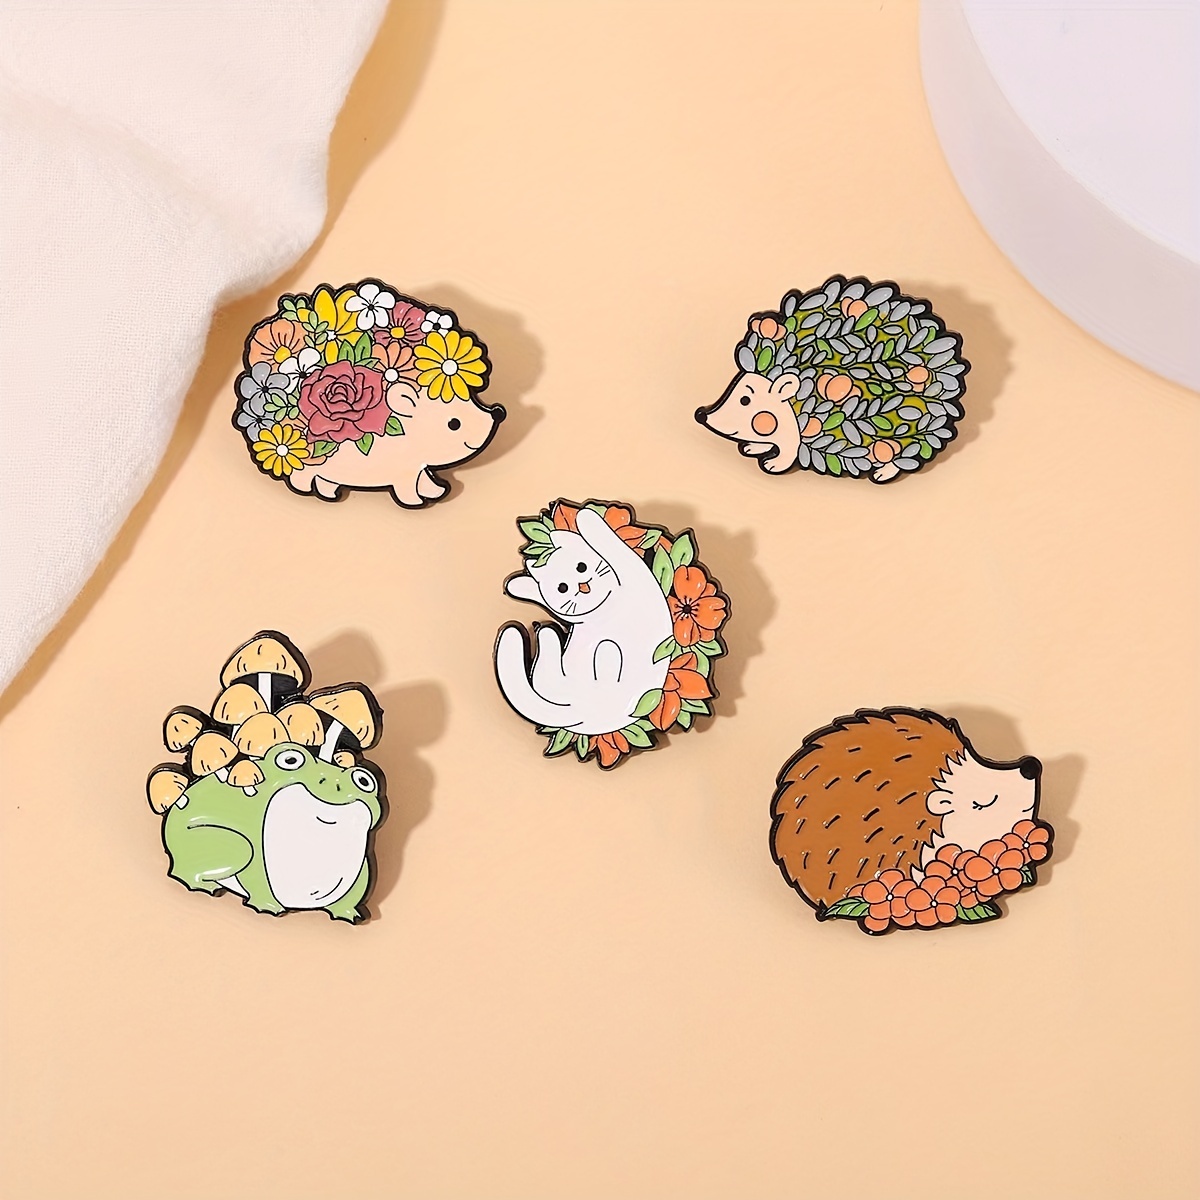  9 Pieces Cat Pins Backpack Pins Kawaii Pins Cute Pins Rabbit  Cat Lapel Pins Brooches Pin Badges for Clothing Backpacks : Arts, Crafts &  Sewing